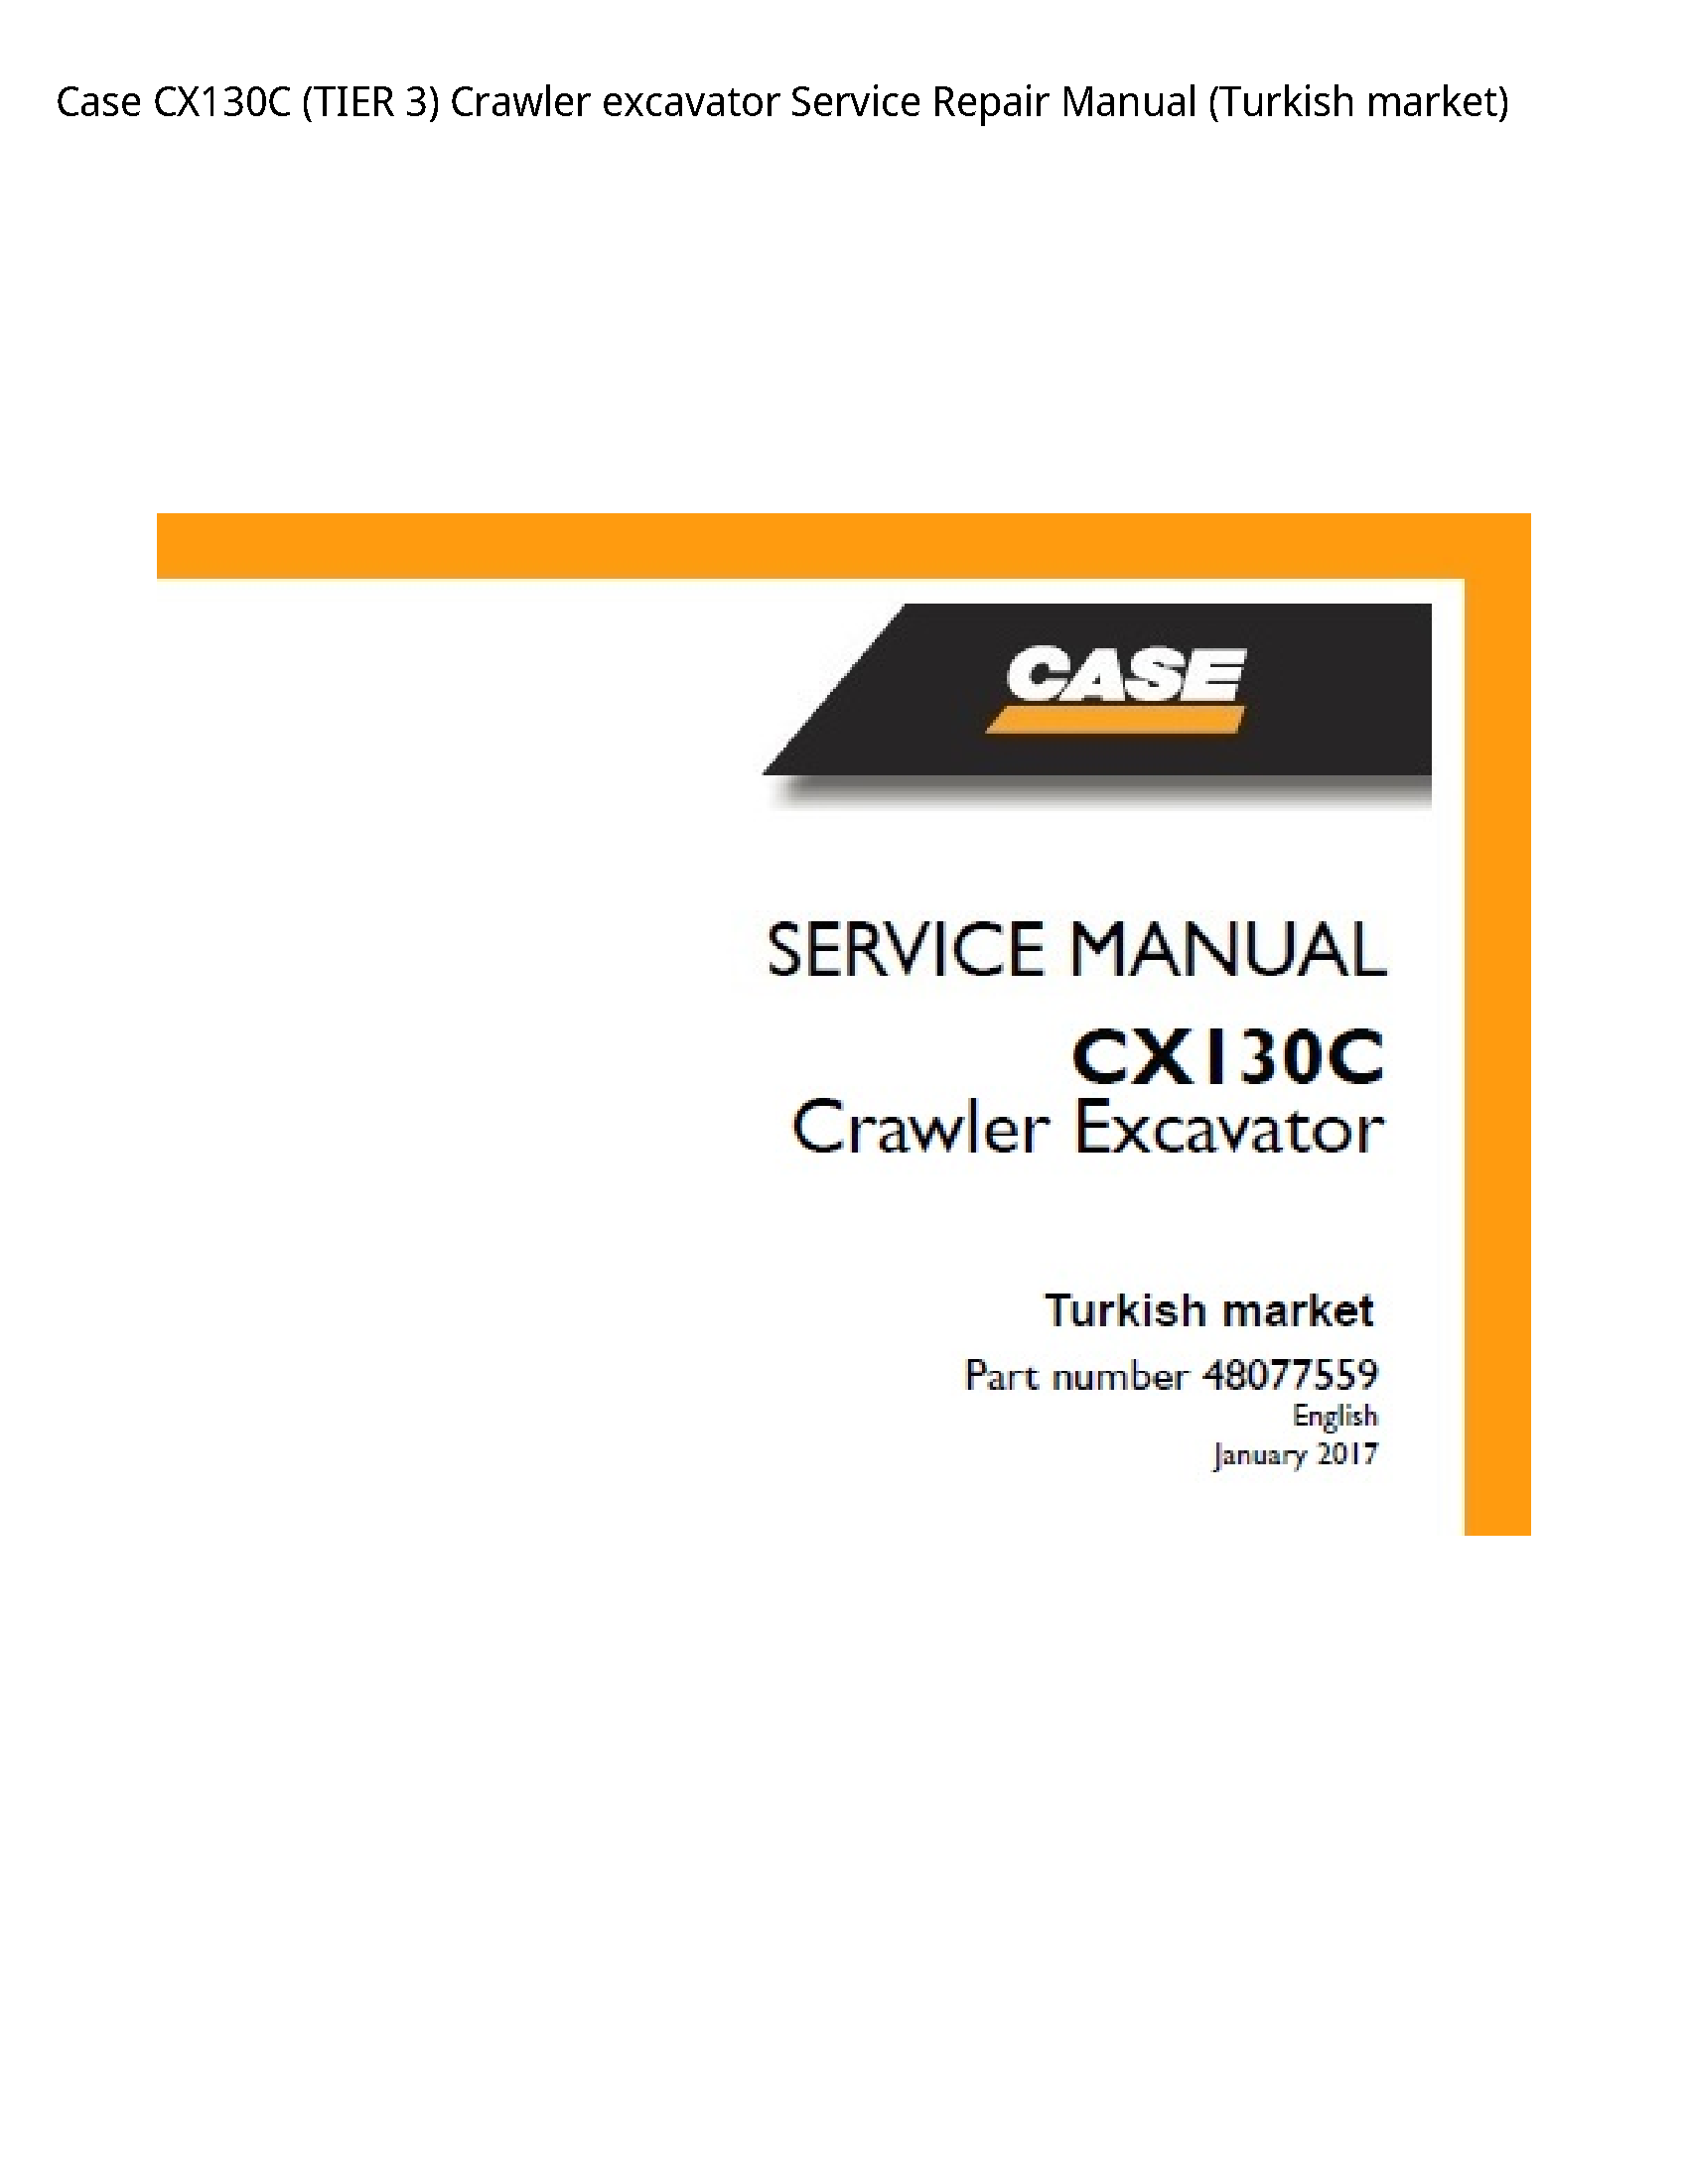 Case/Case IH CX130C (TIER Crawler excavator manual